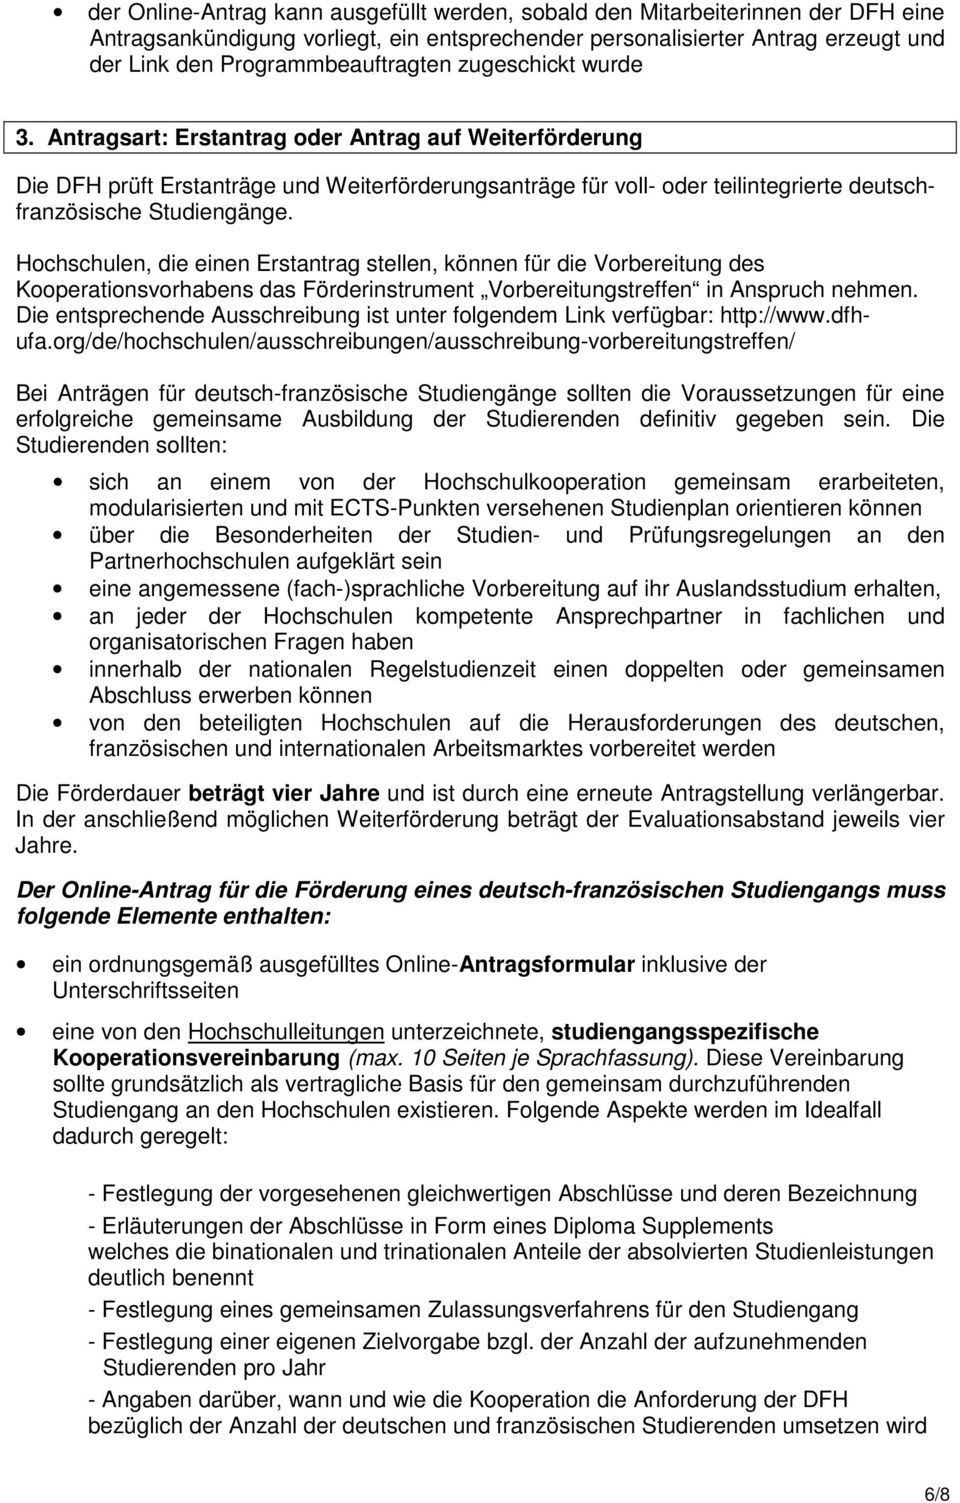 Antragsart: Erstantrag oder Antrag auf Weiterförderung Die DFH prüft Erstanträge und Weiterförderungsanträge für voll- oder teilintegrierte deutschfranzösische Studiengänge.